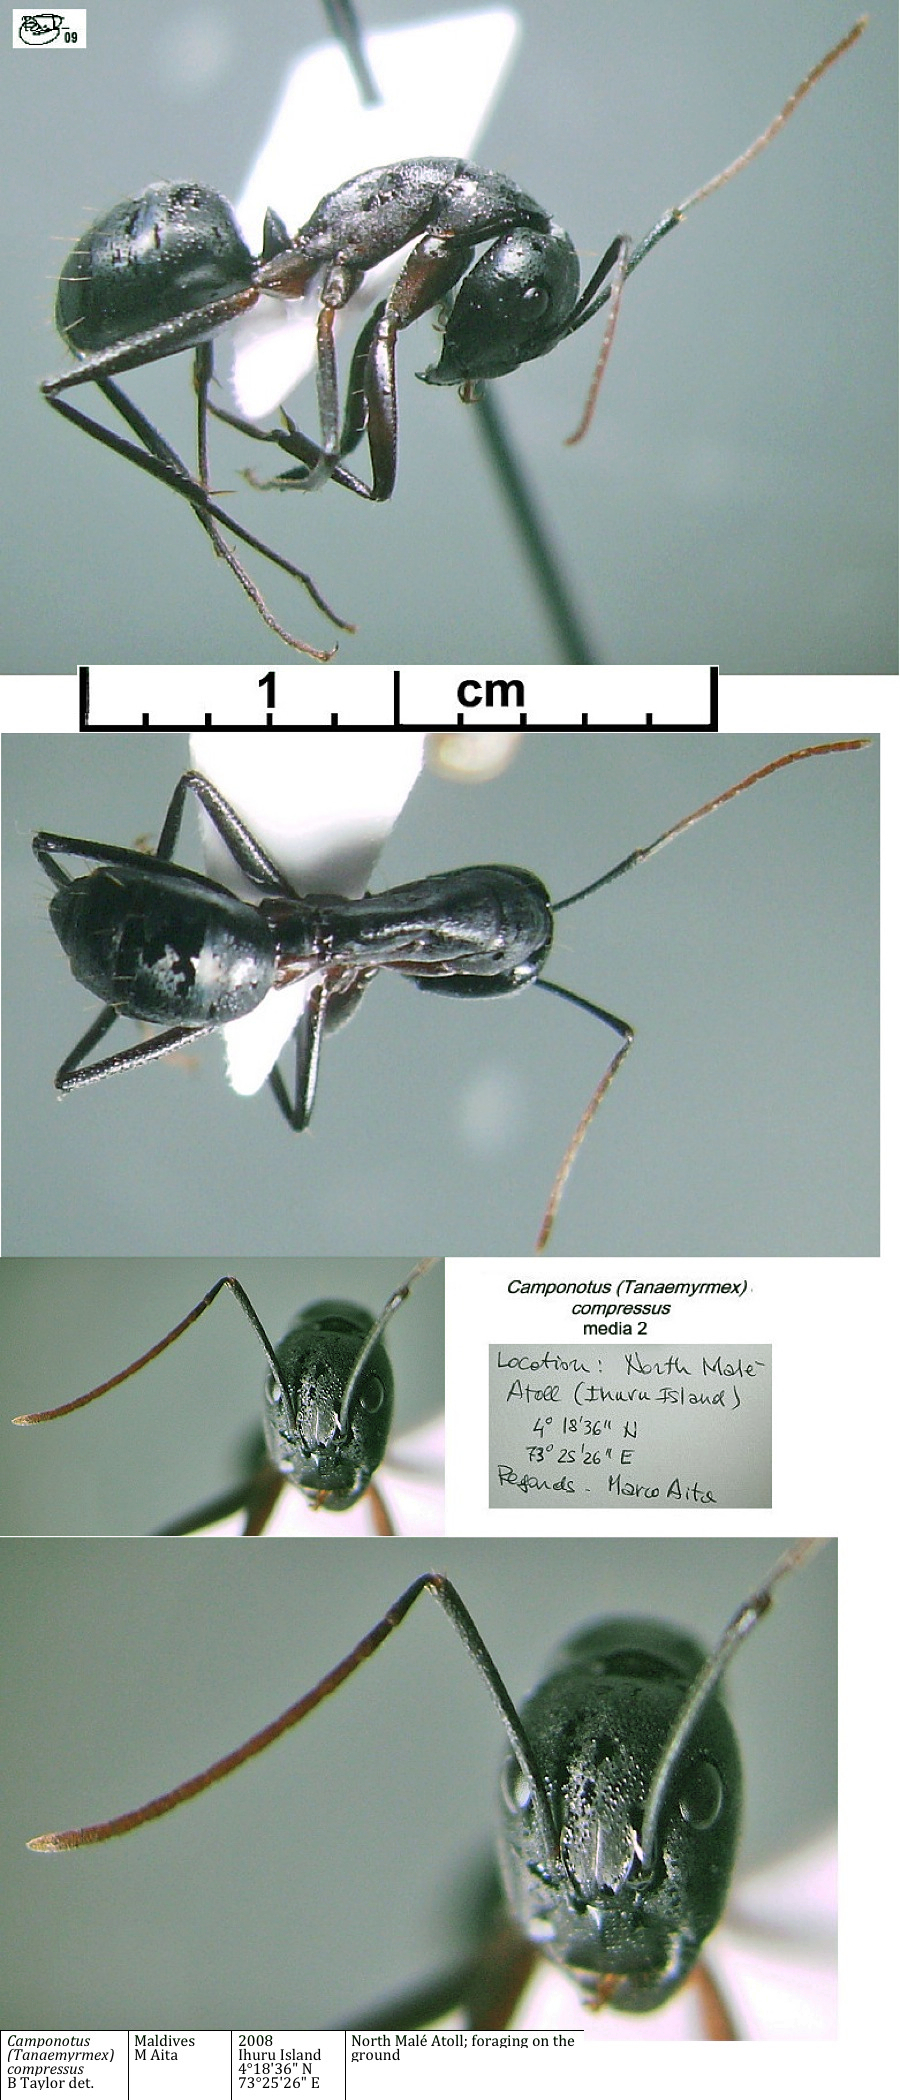 {Camponotus compressus media 2}